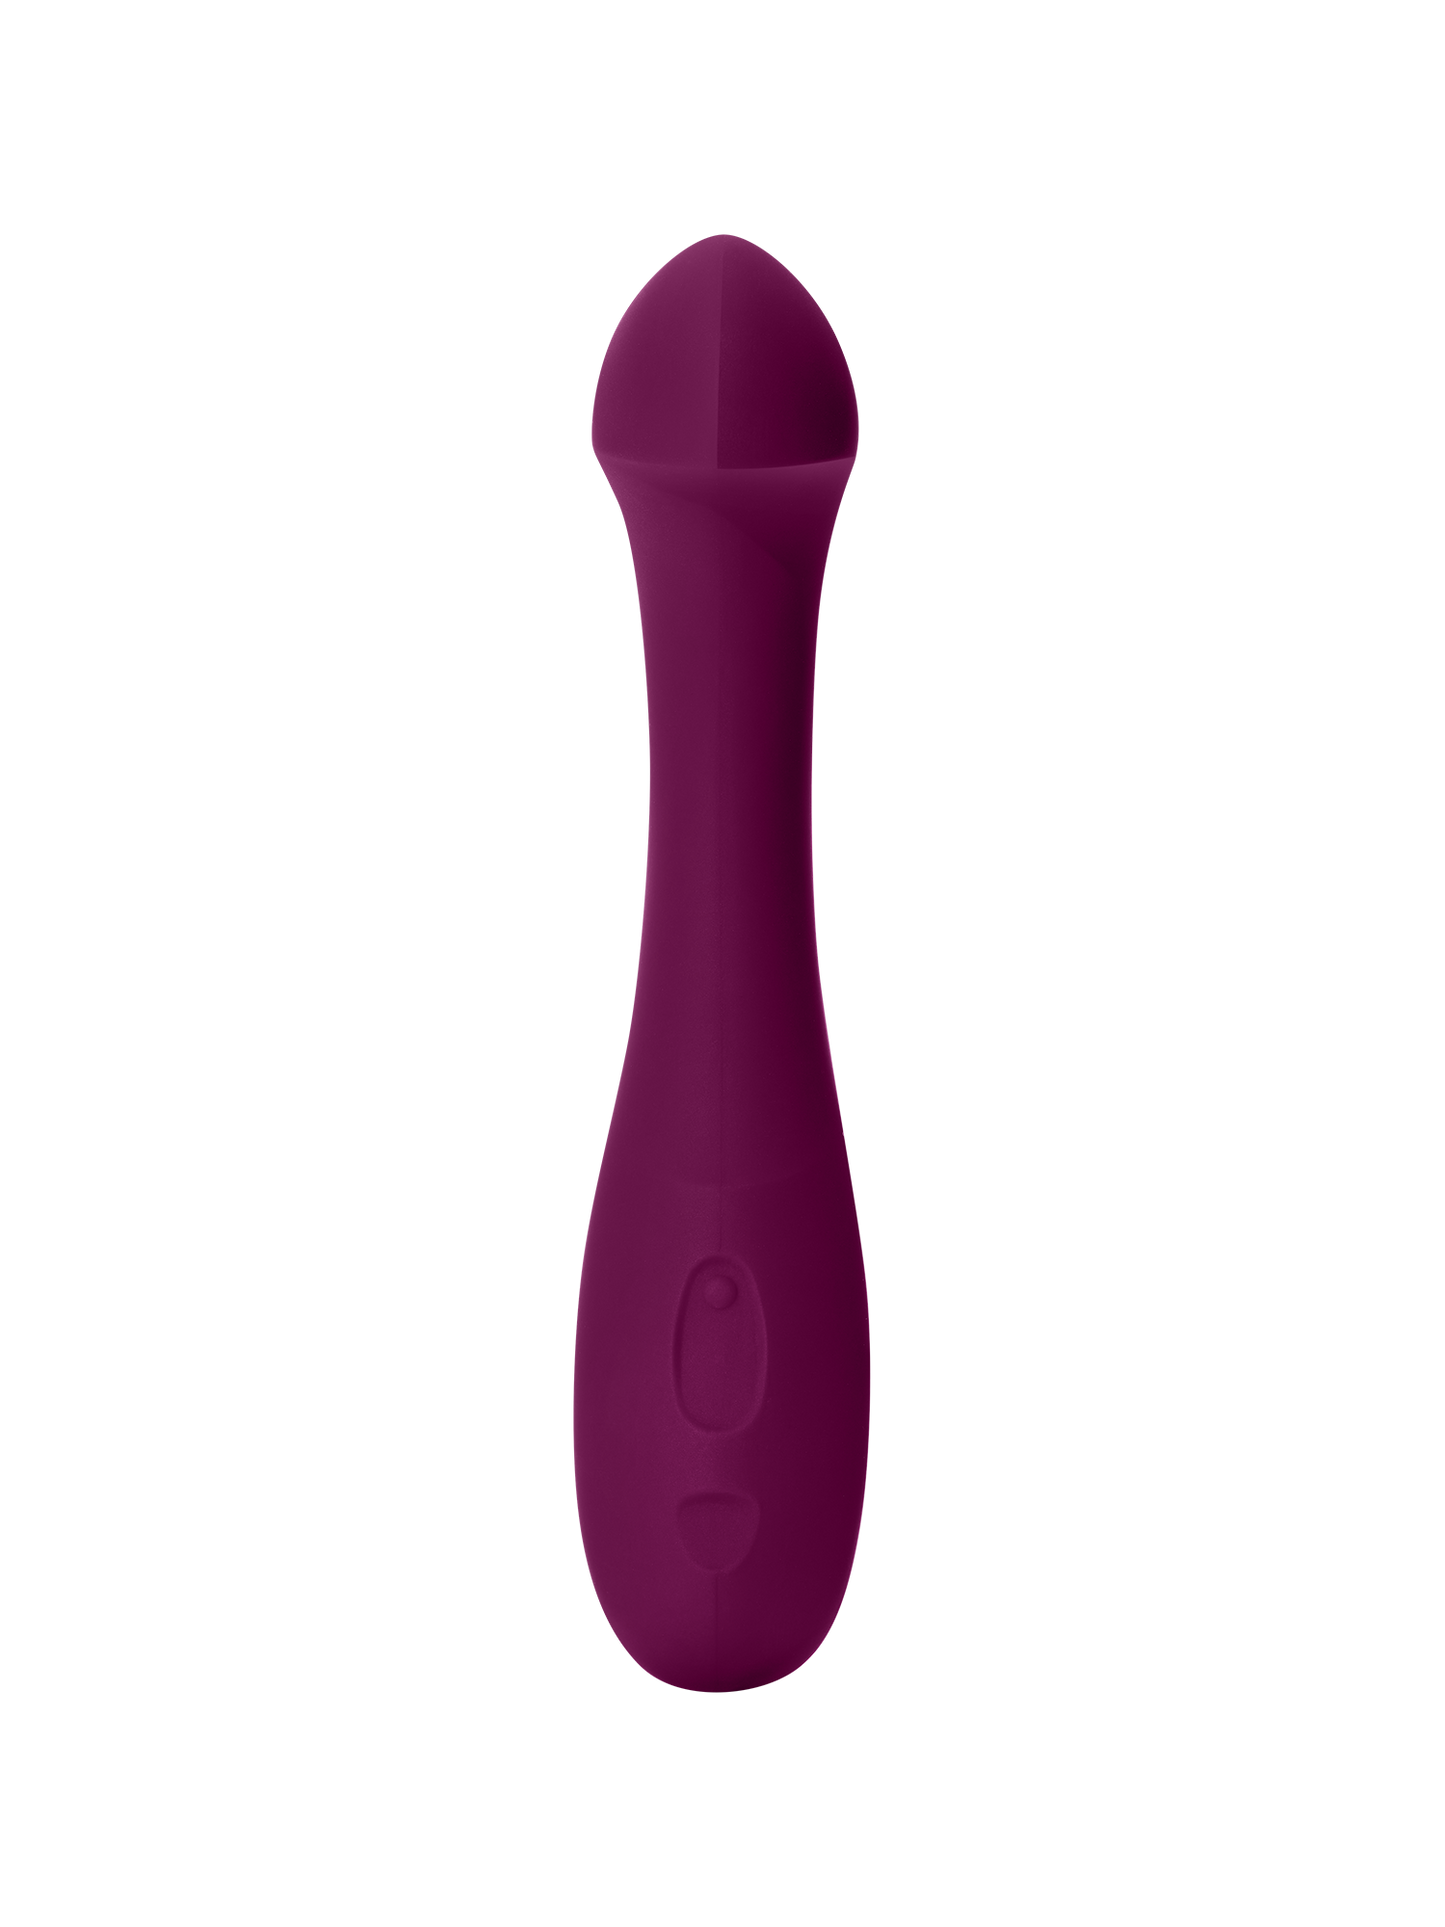 Plum | Seamless | Plum purple curved vibrator Arc on beige background